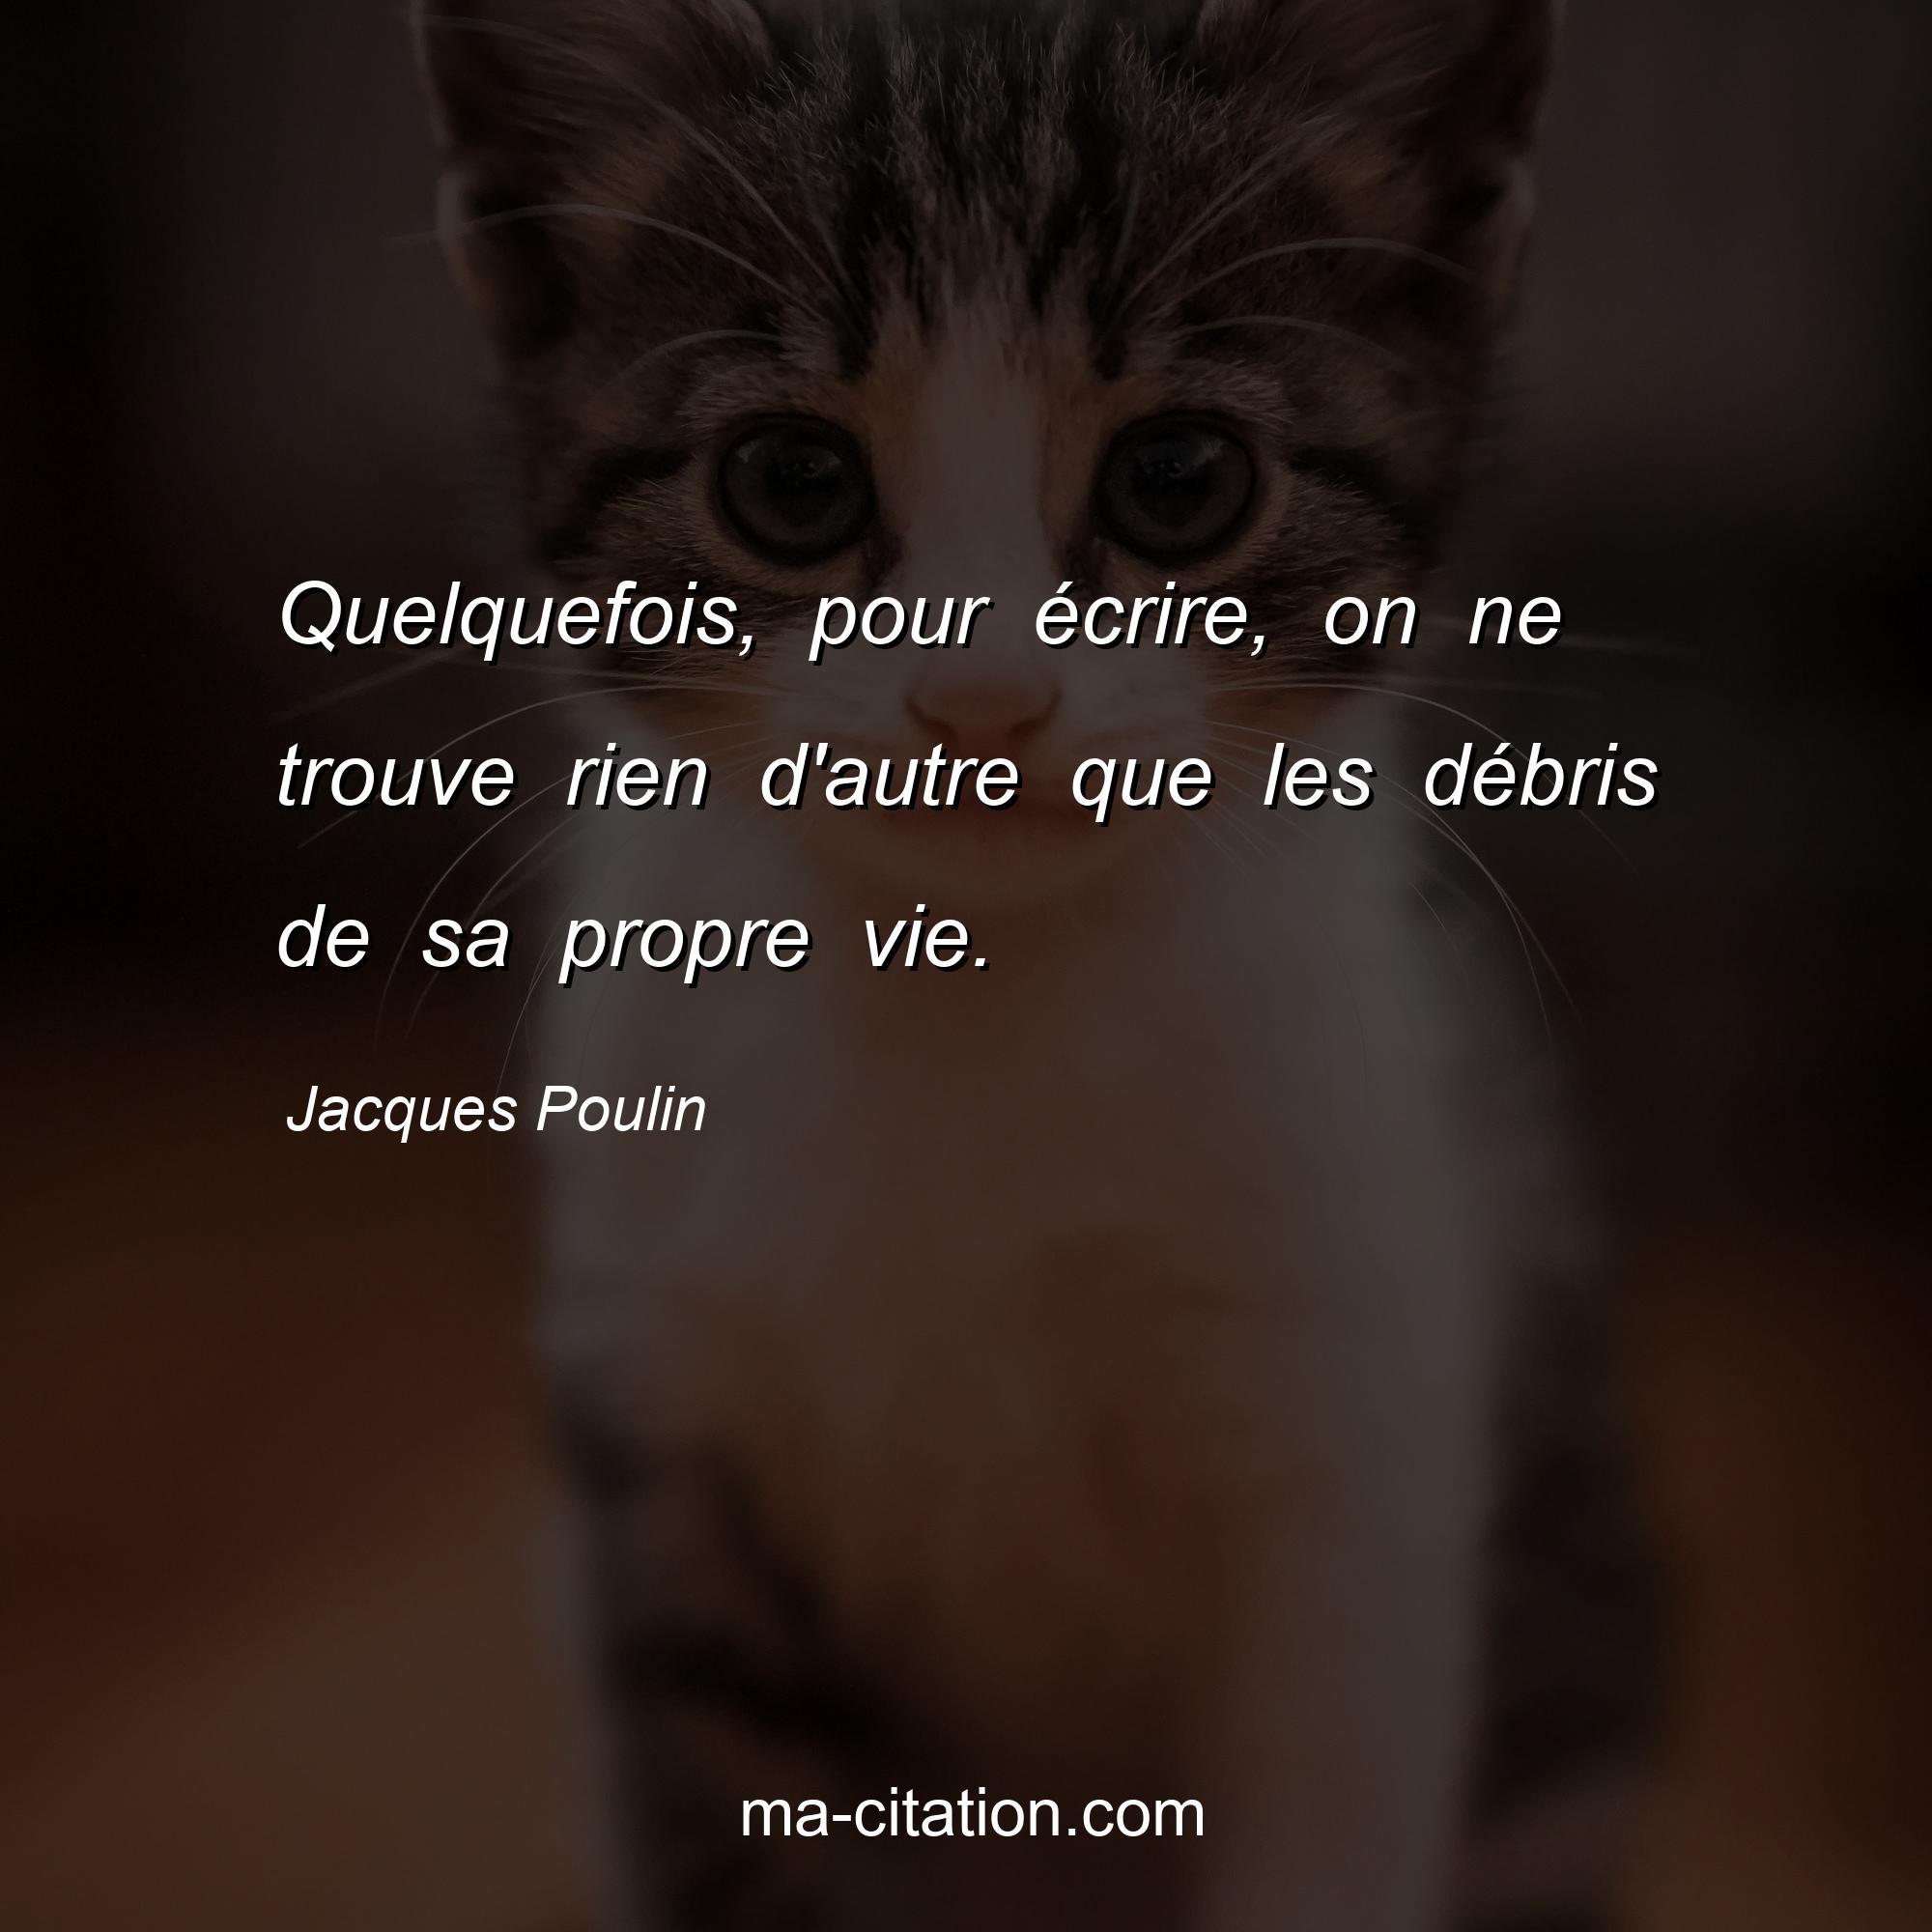 Jacques Poulin : Quelquefois, pour écrire, on ne trouve rien d'autre que les débris de sa propre vie.